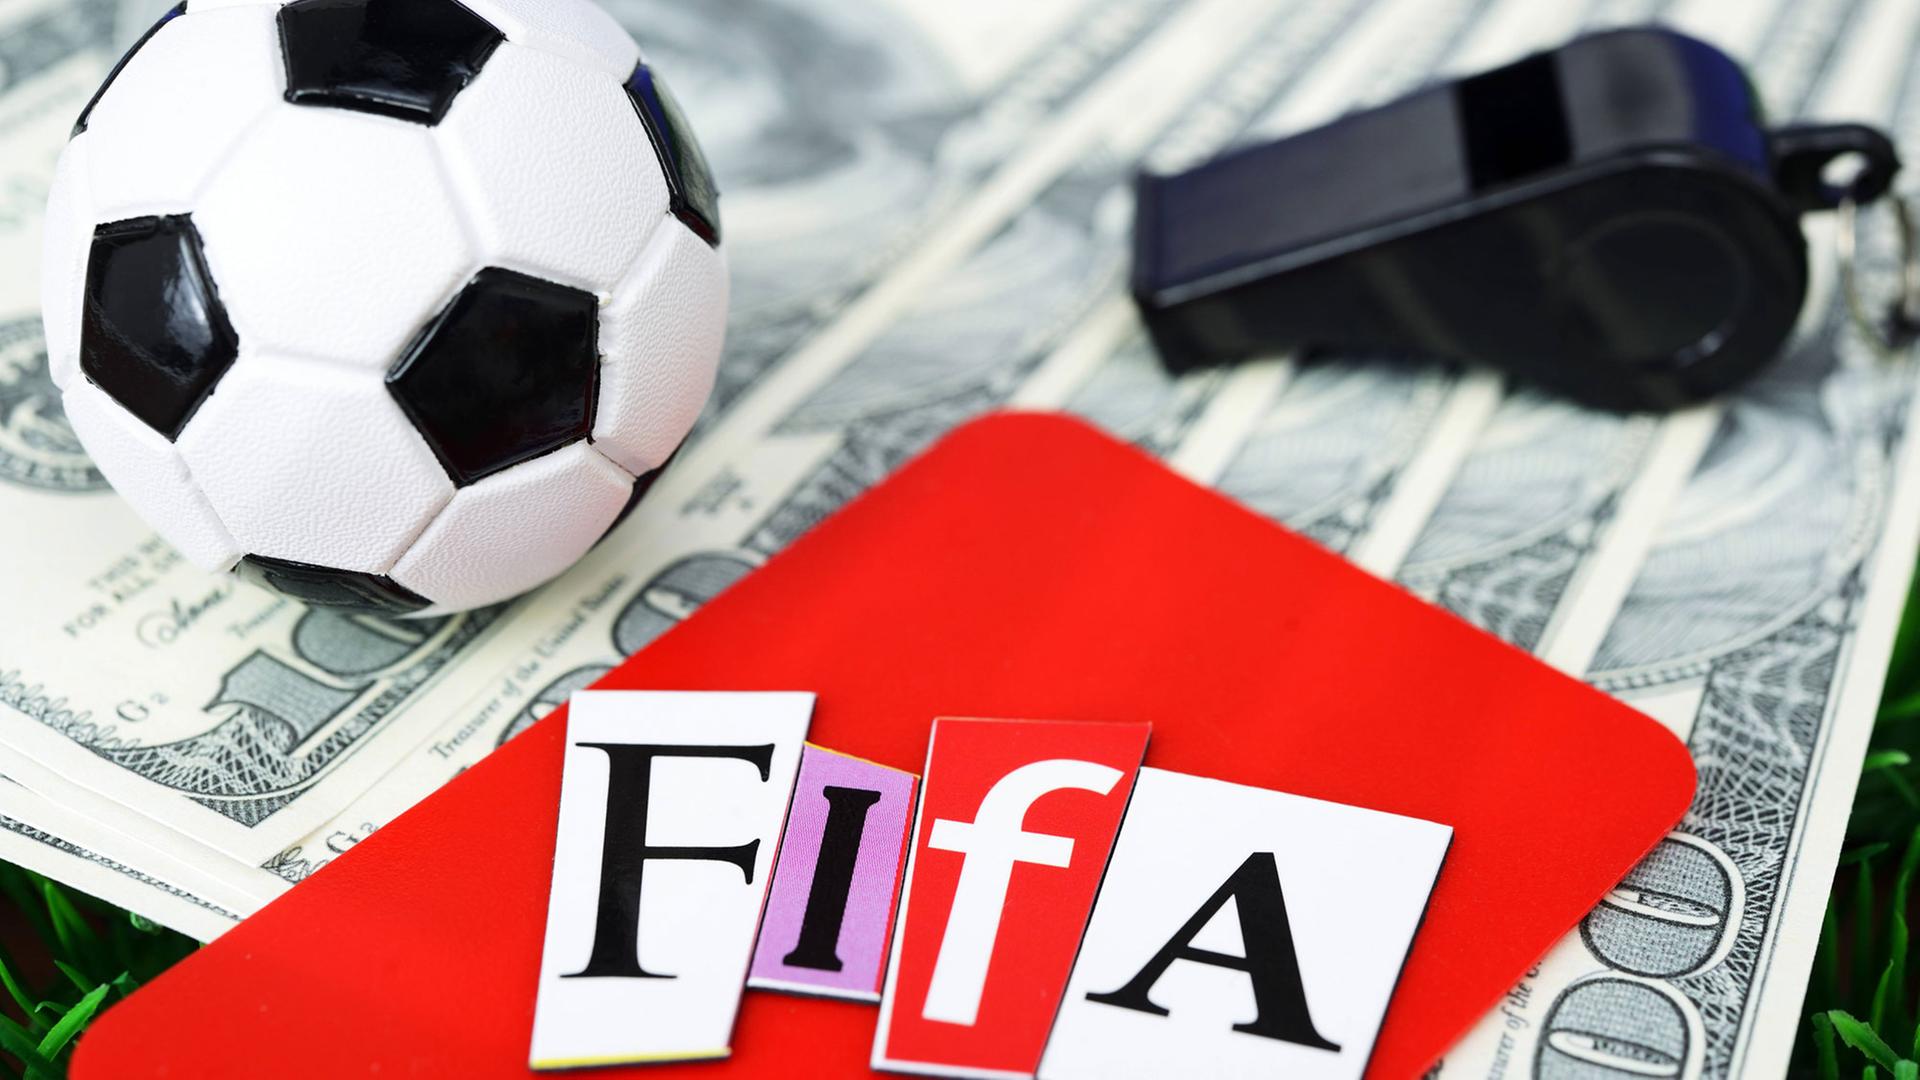 Ein Miniaturfußball auf Dollarscheinen neben einer schwarzen Trillerpfeife und einer Roten Karte mit Fifa-Schriftzug.